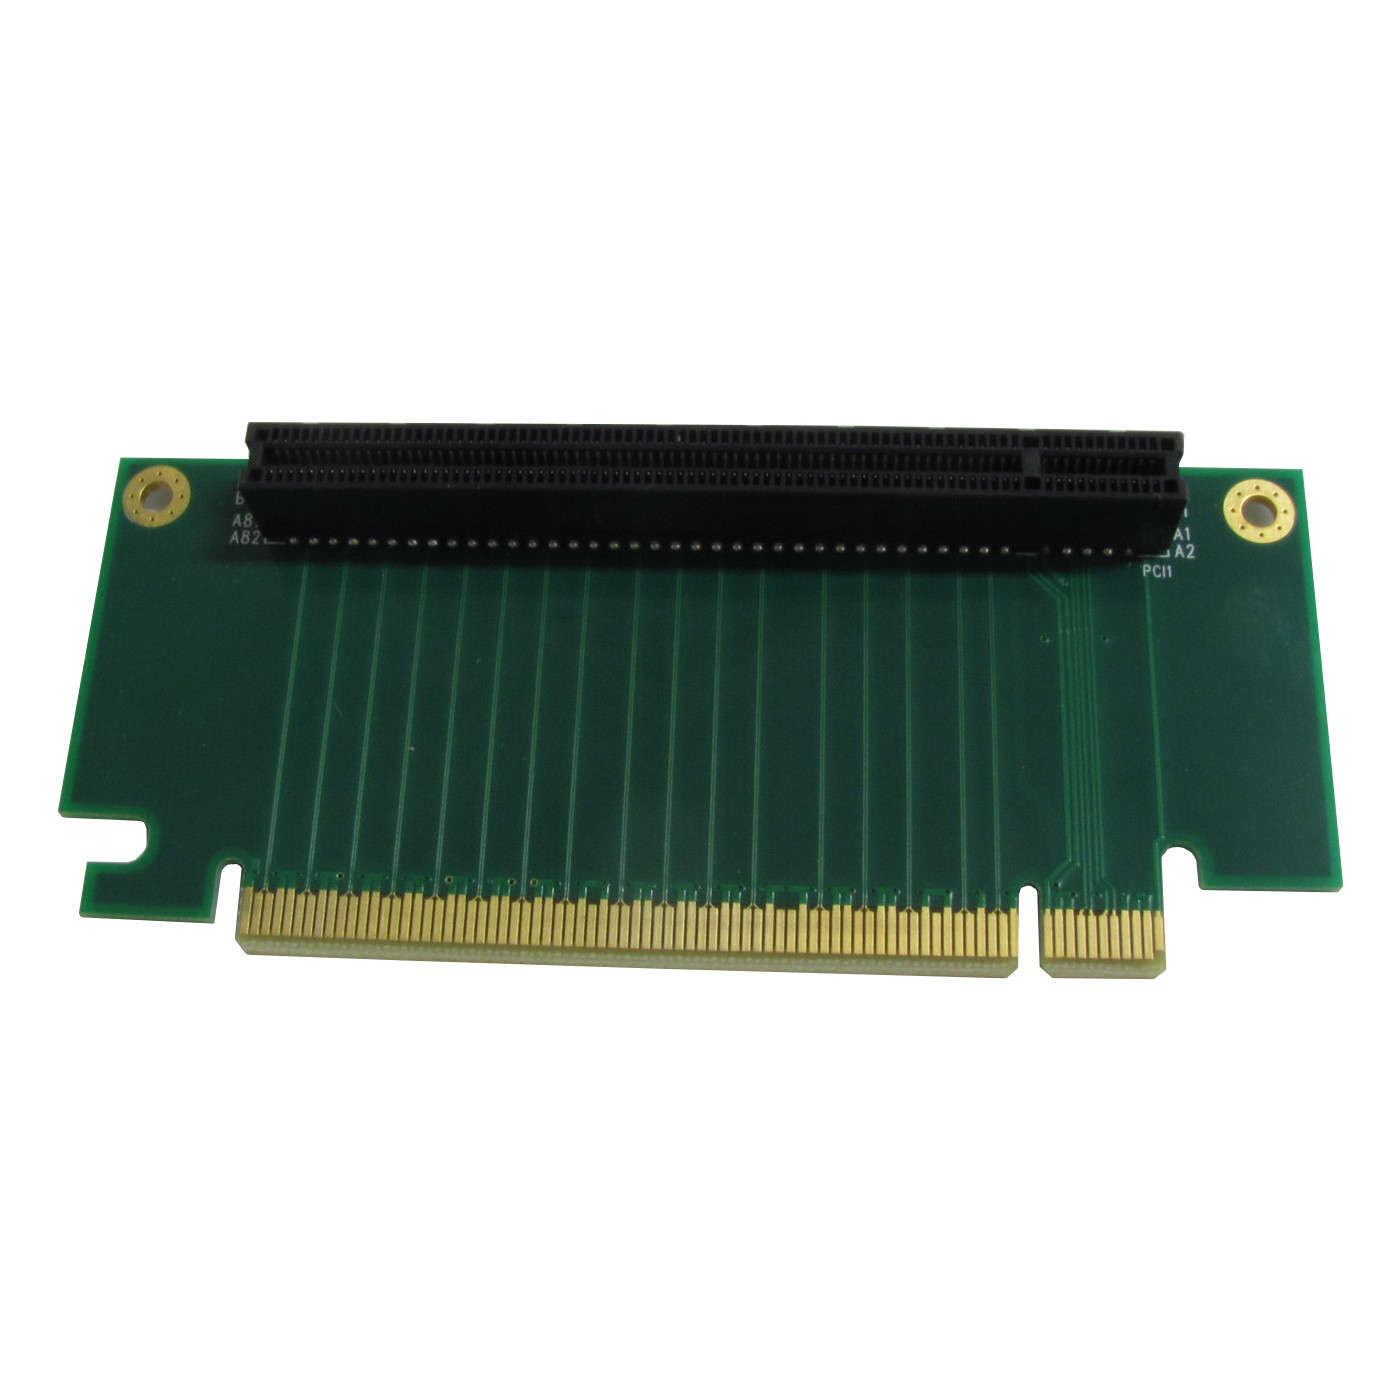 Riser Card PCI Express - CLKF-373 